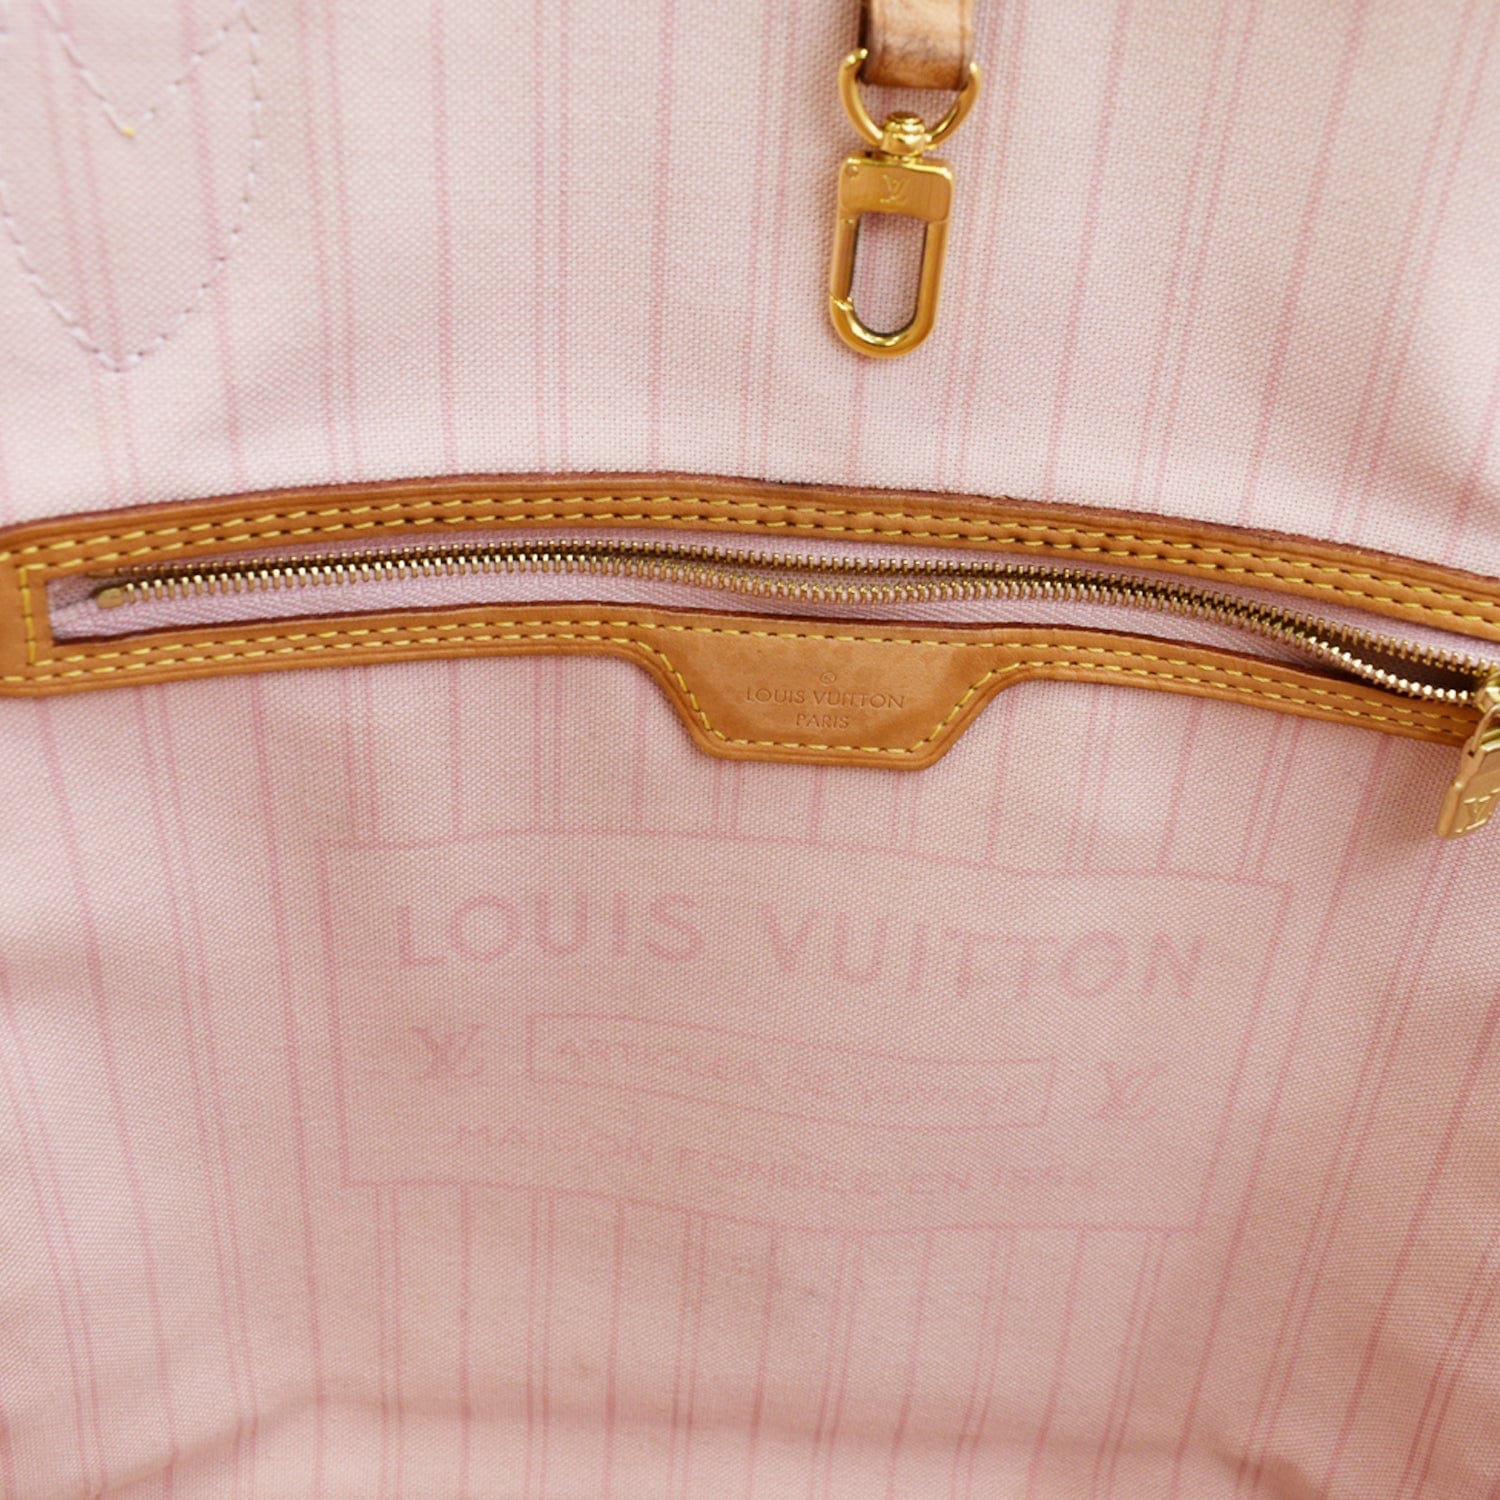 Louis Vuitton Damier Azur MM Neverfull – SFN